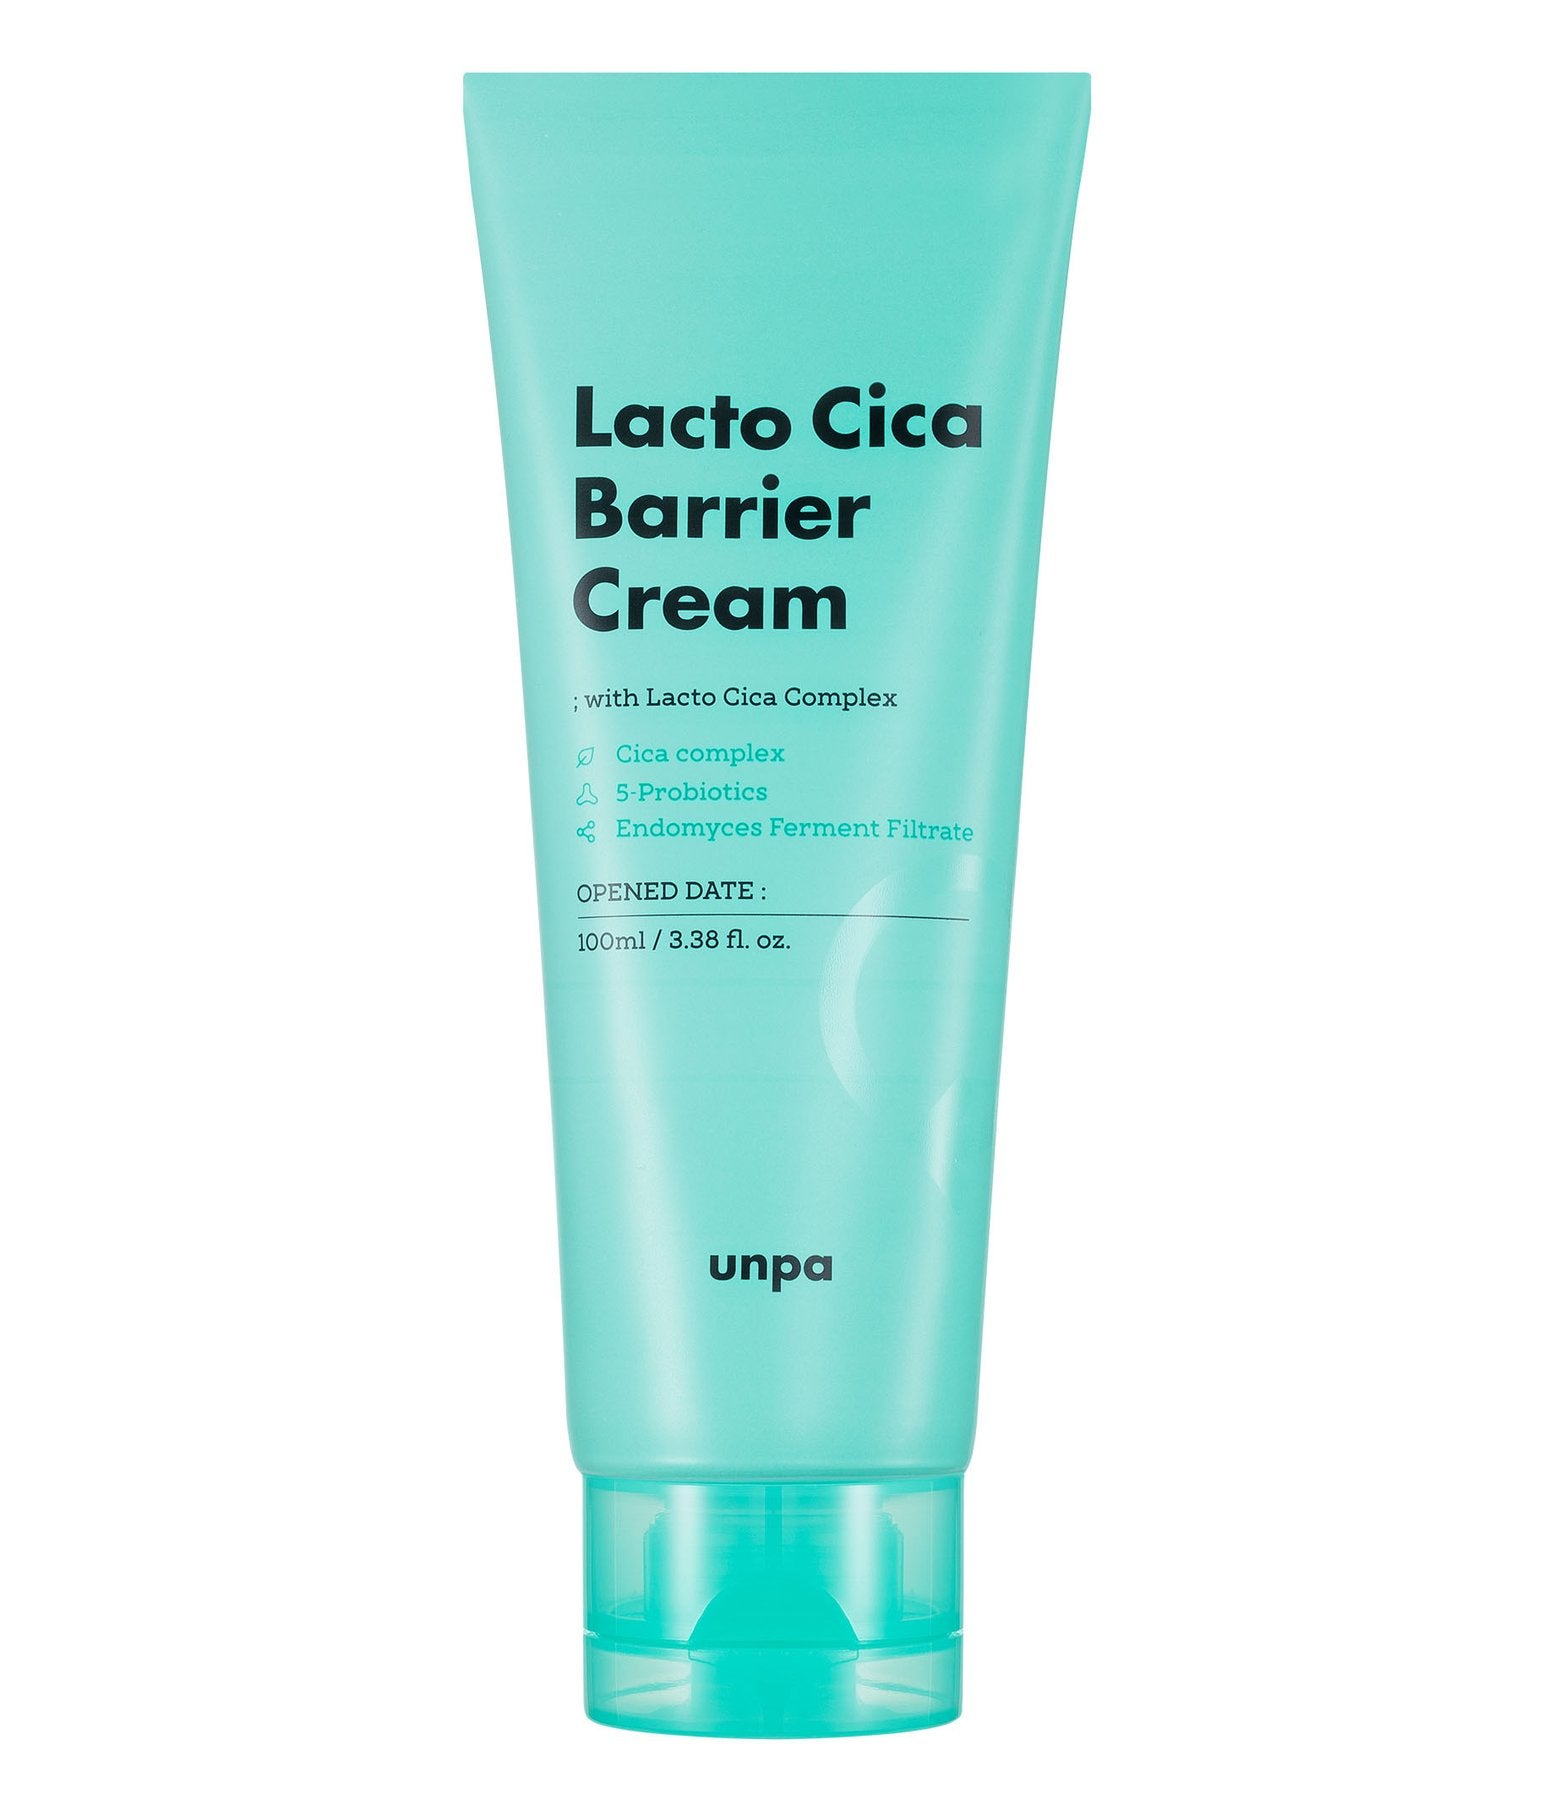 UNPA Lacto Cica Barrier Cream (100ml)